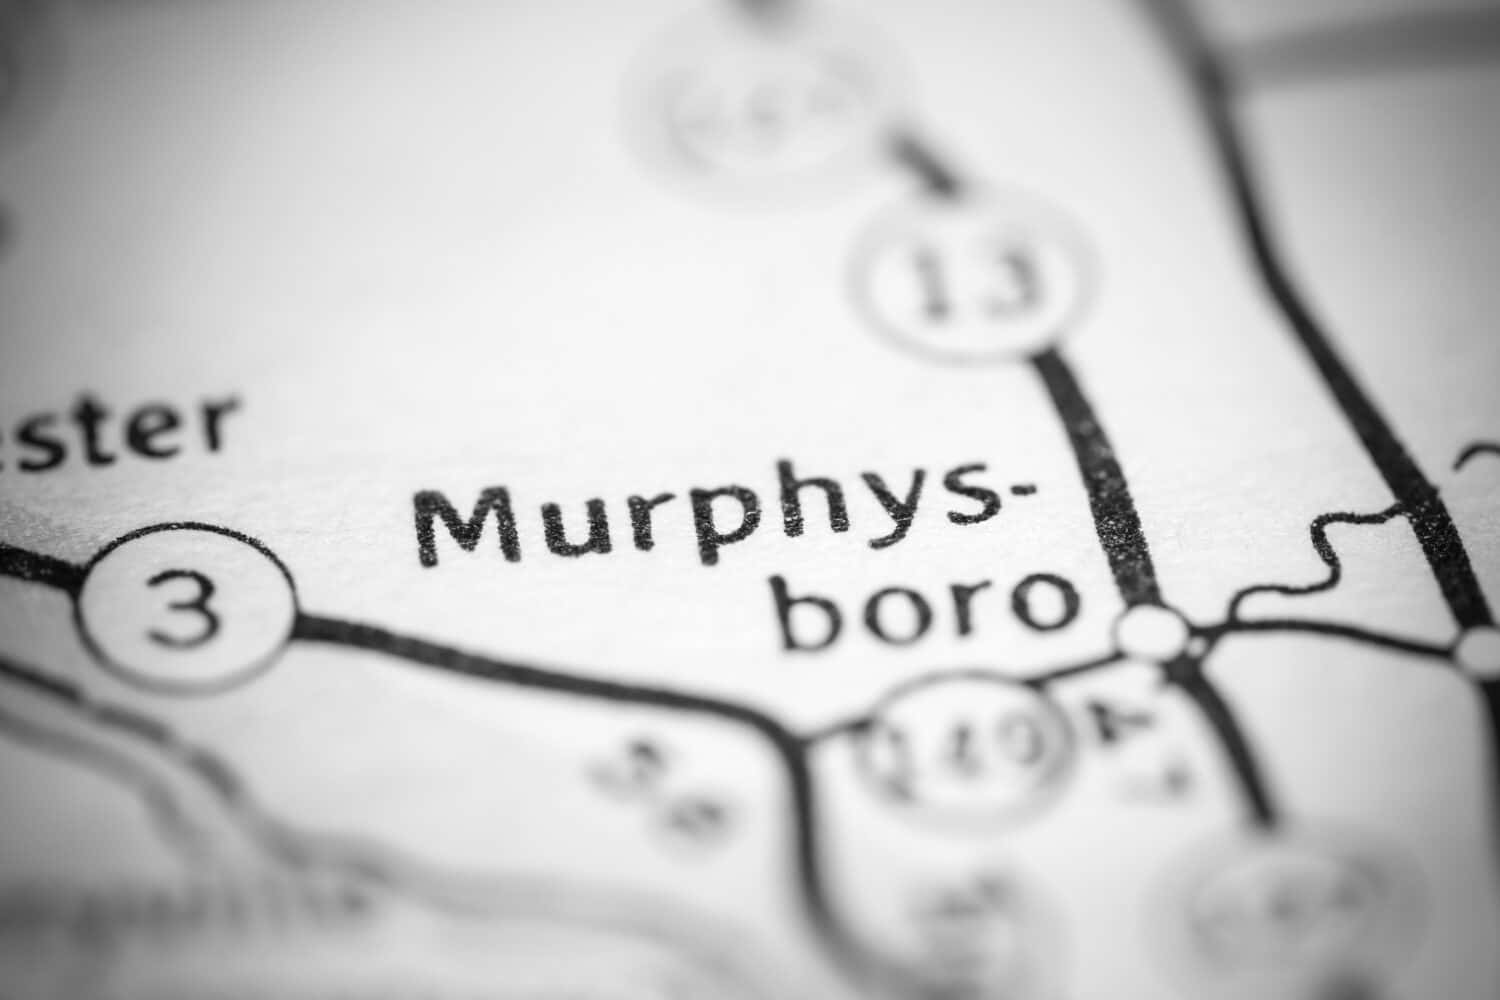 Murphysboro. Illinois. USA on a geography map.